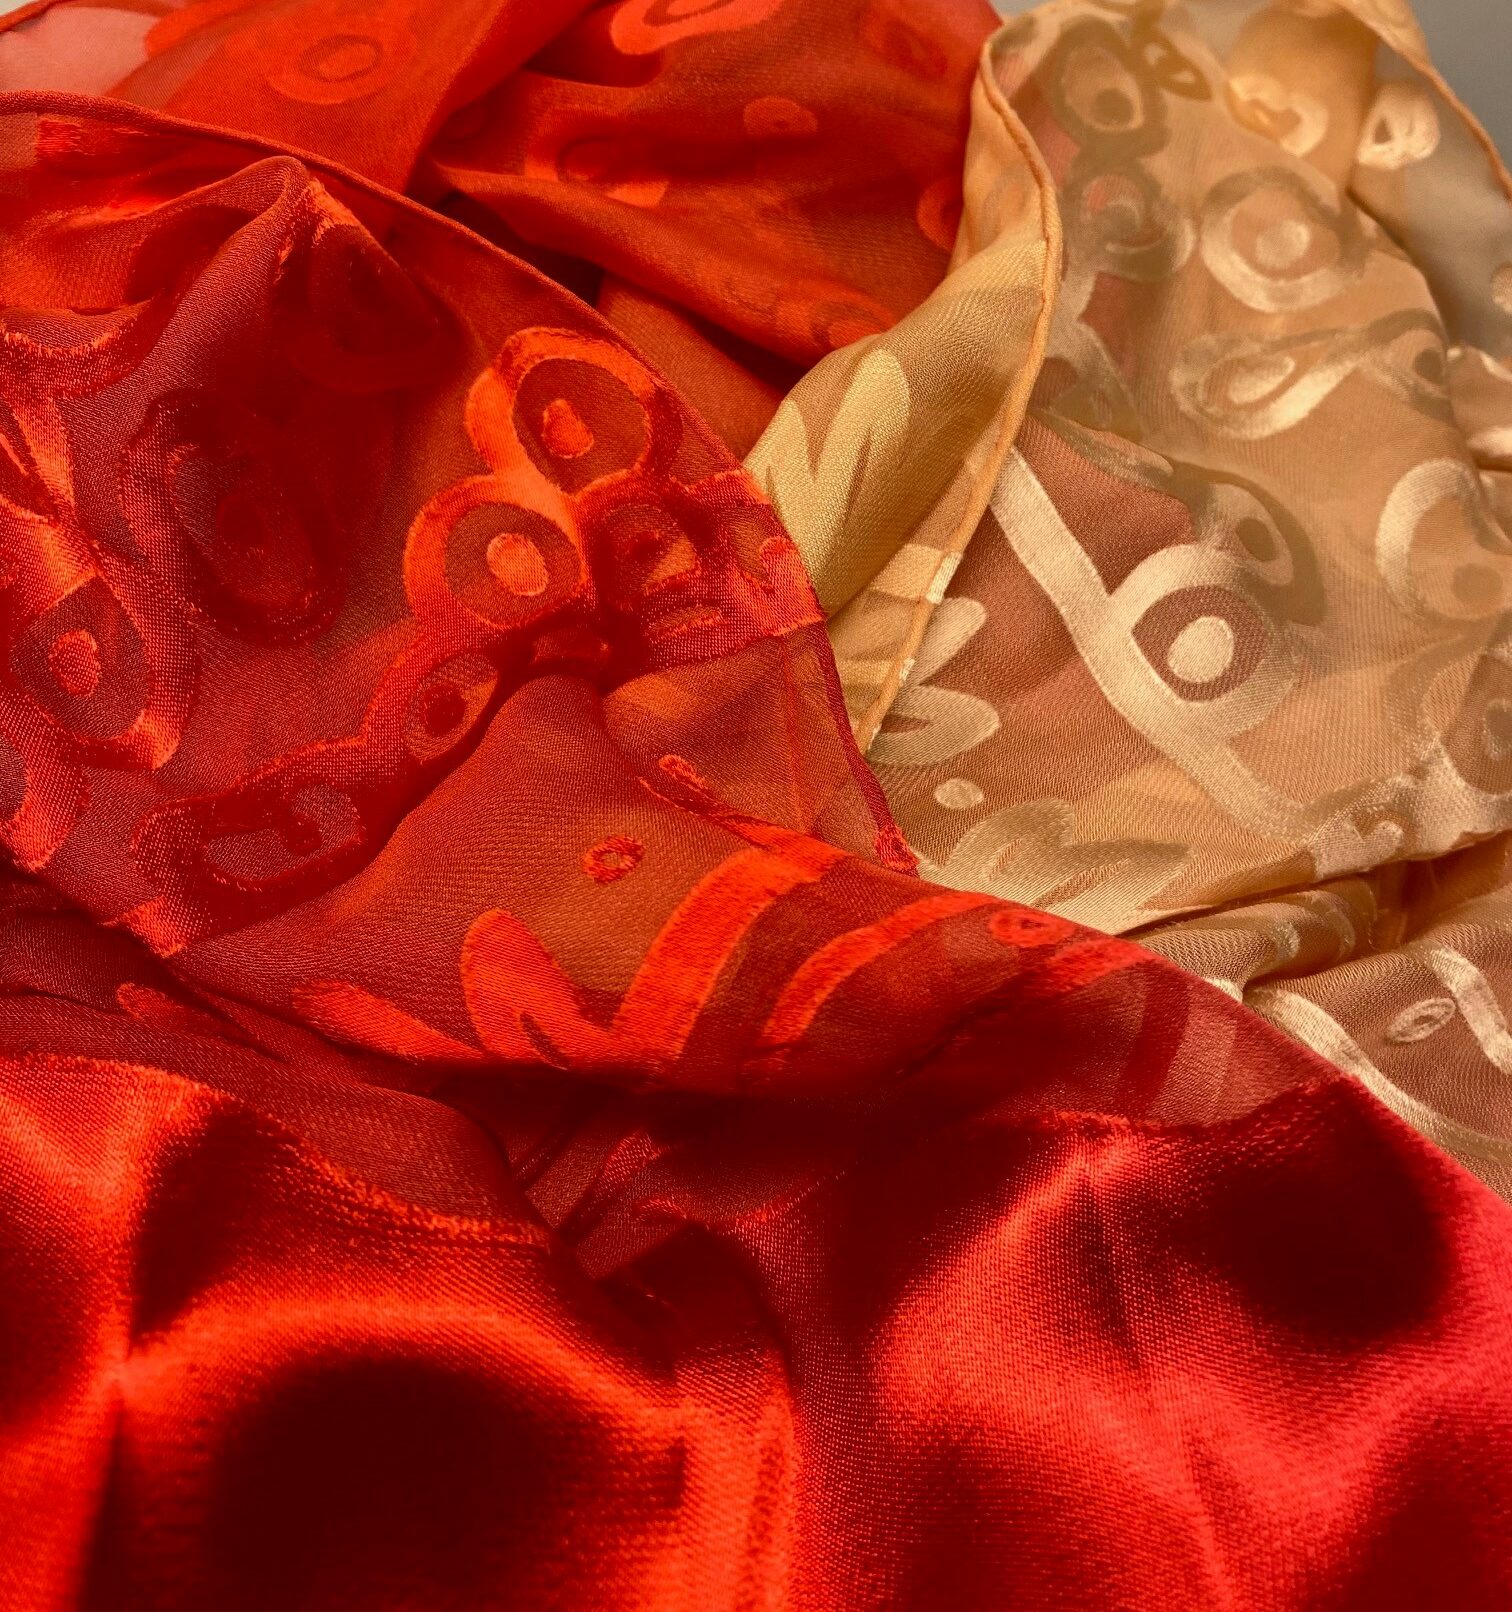 Silkesatin Tørklæde Reliefmønster - Koralrød Beige, rød, natur, satin, ausbrenner, brændt, ætset, mønster, relief, specielt, særligt, flot, yndigt, frisk, grøn, silke, smukt, fed, blank, biti, ribe, unikt, unika